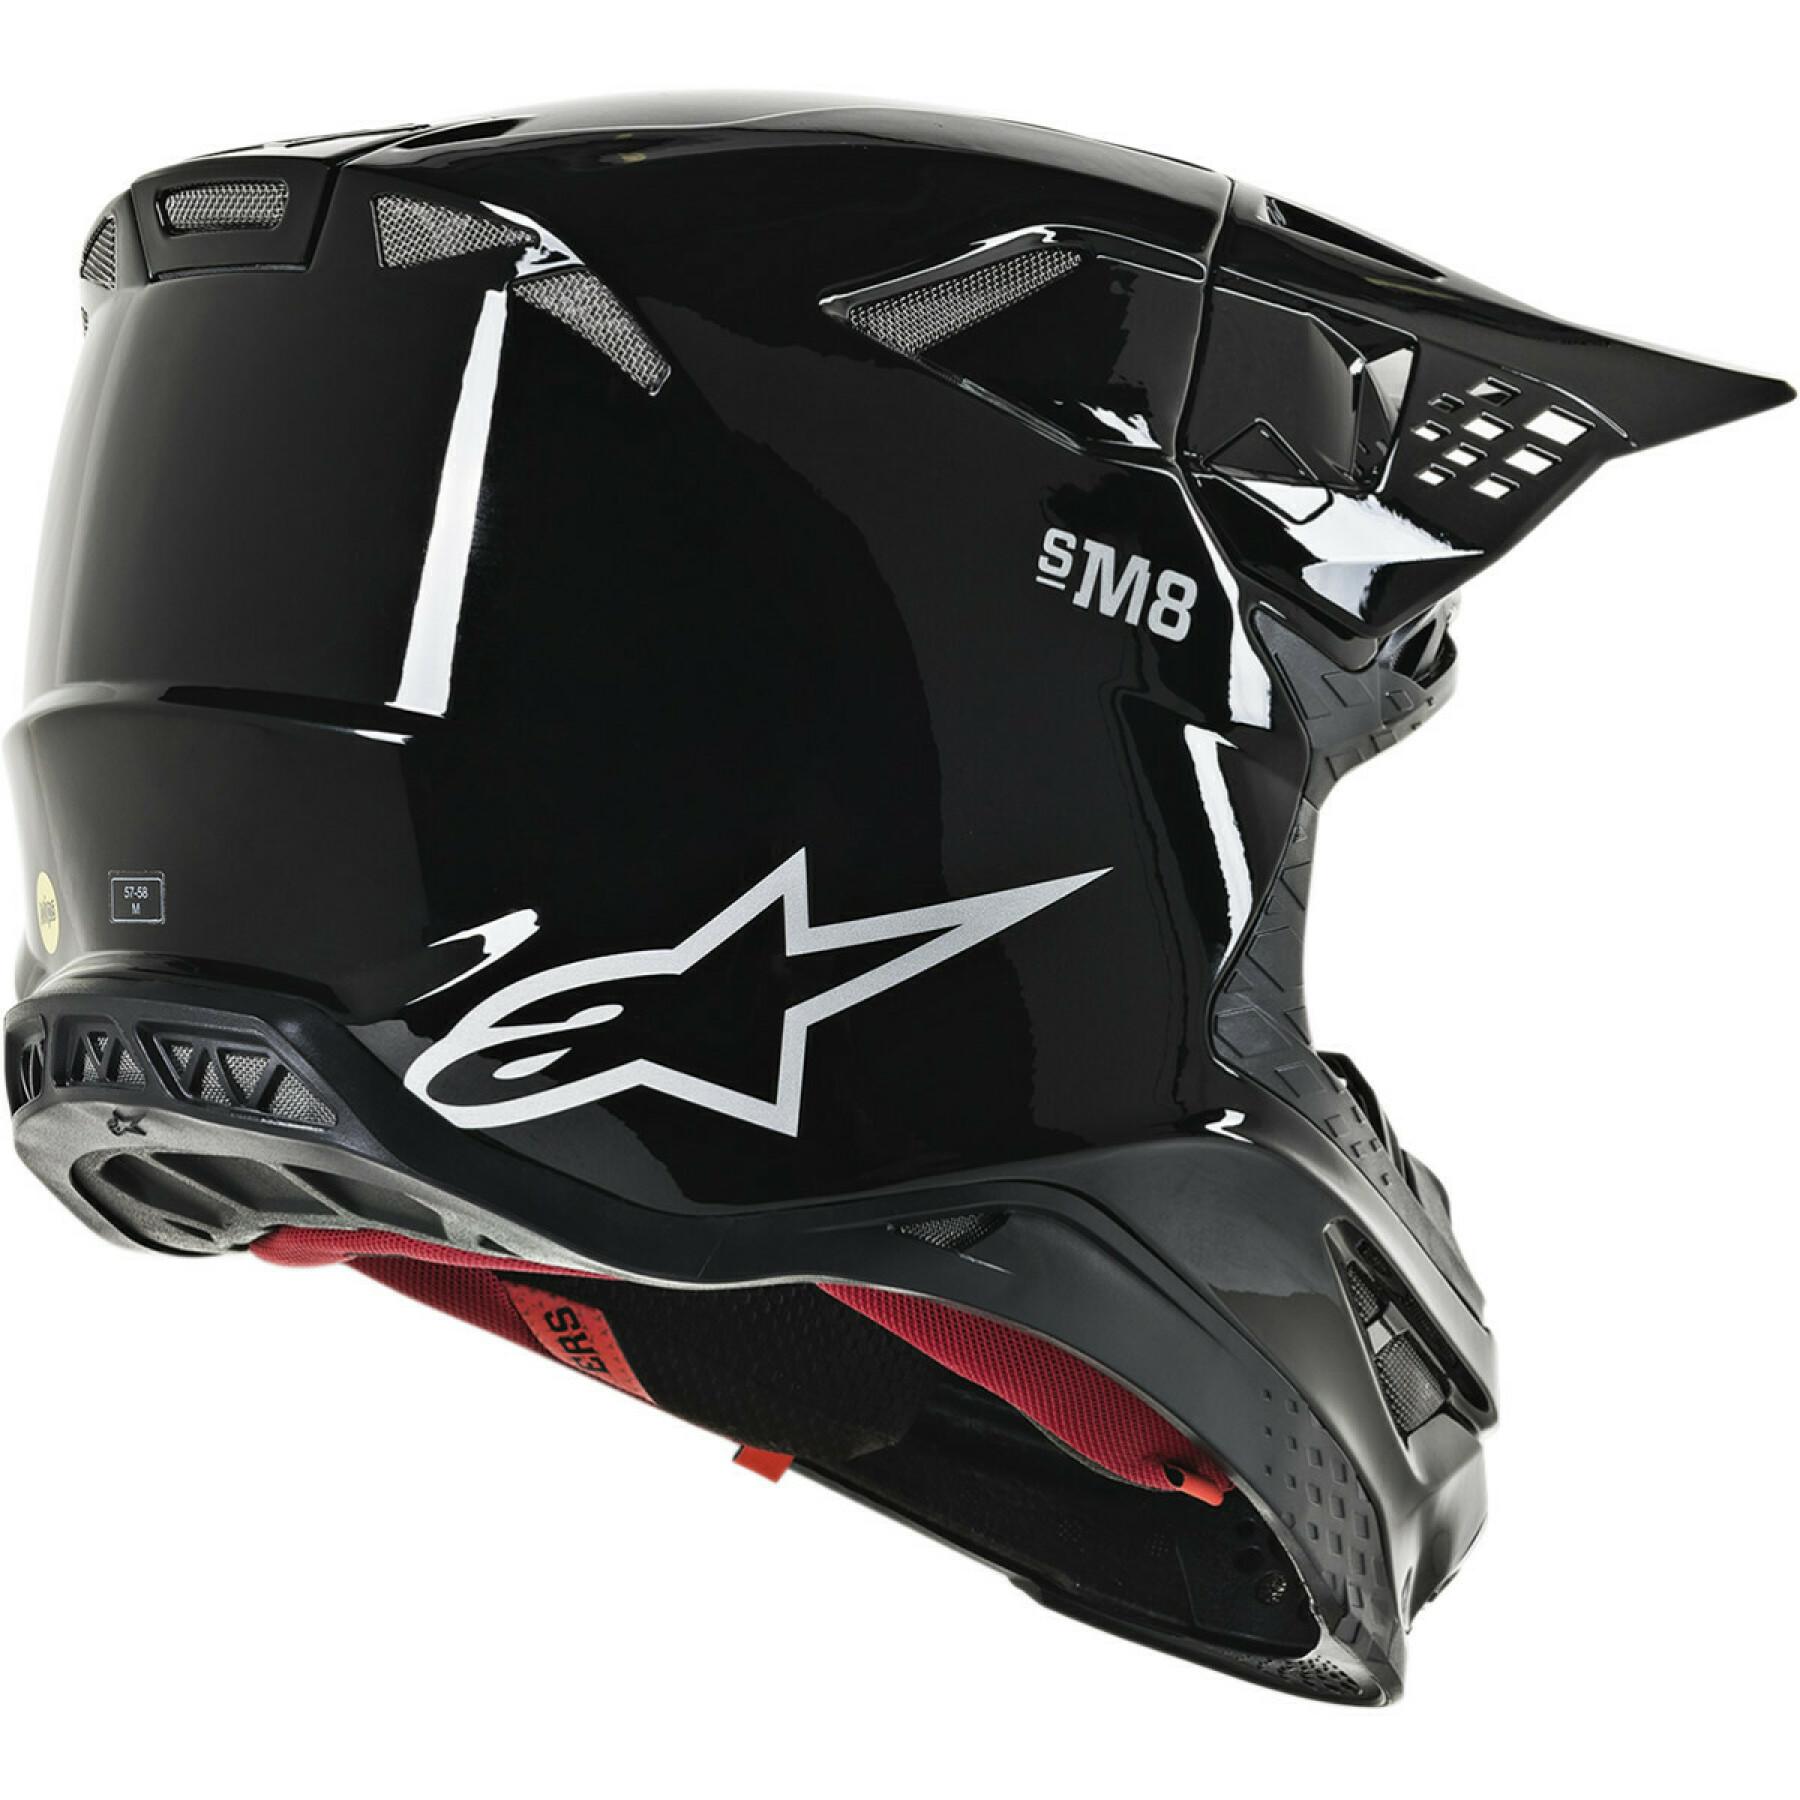 Motorrad-Cross-Helm Alpinestars SM8 solid black